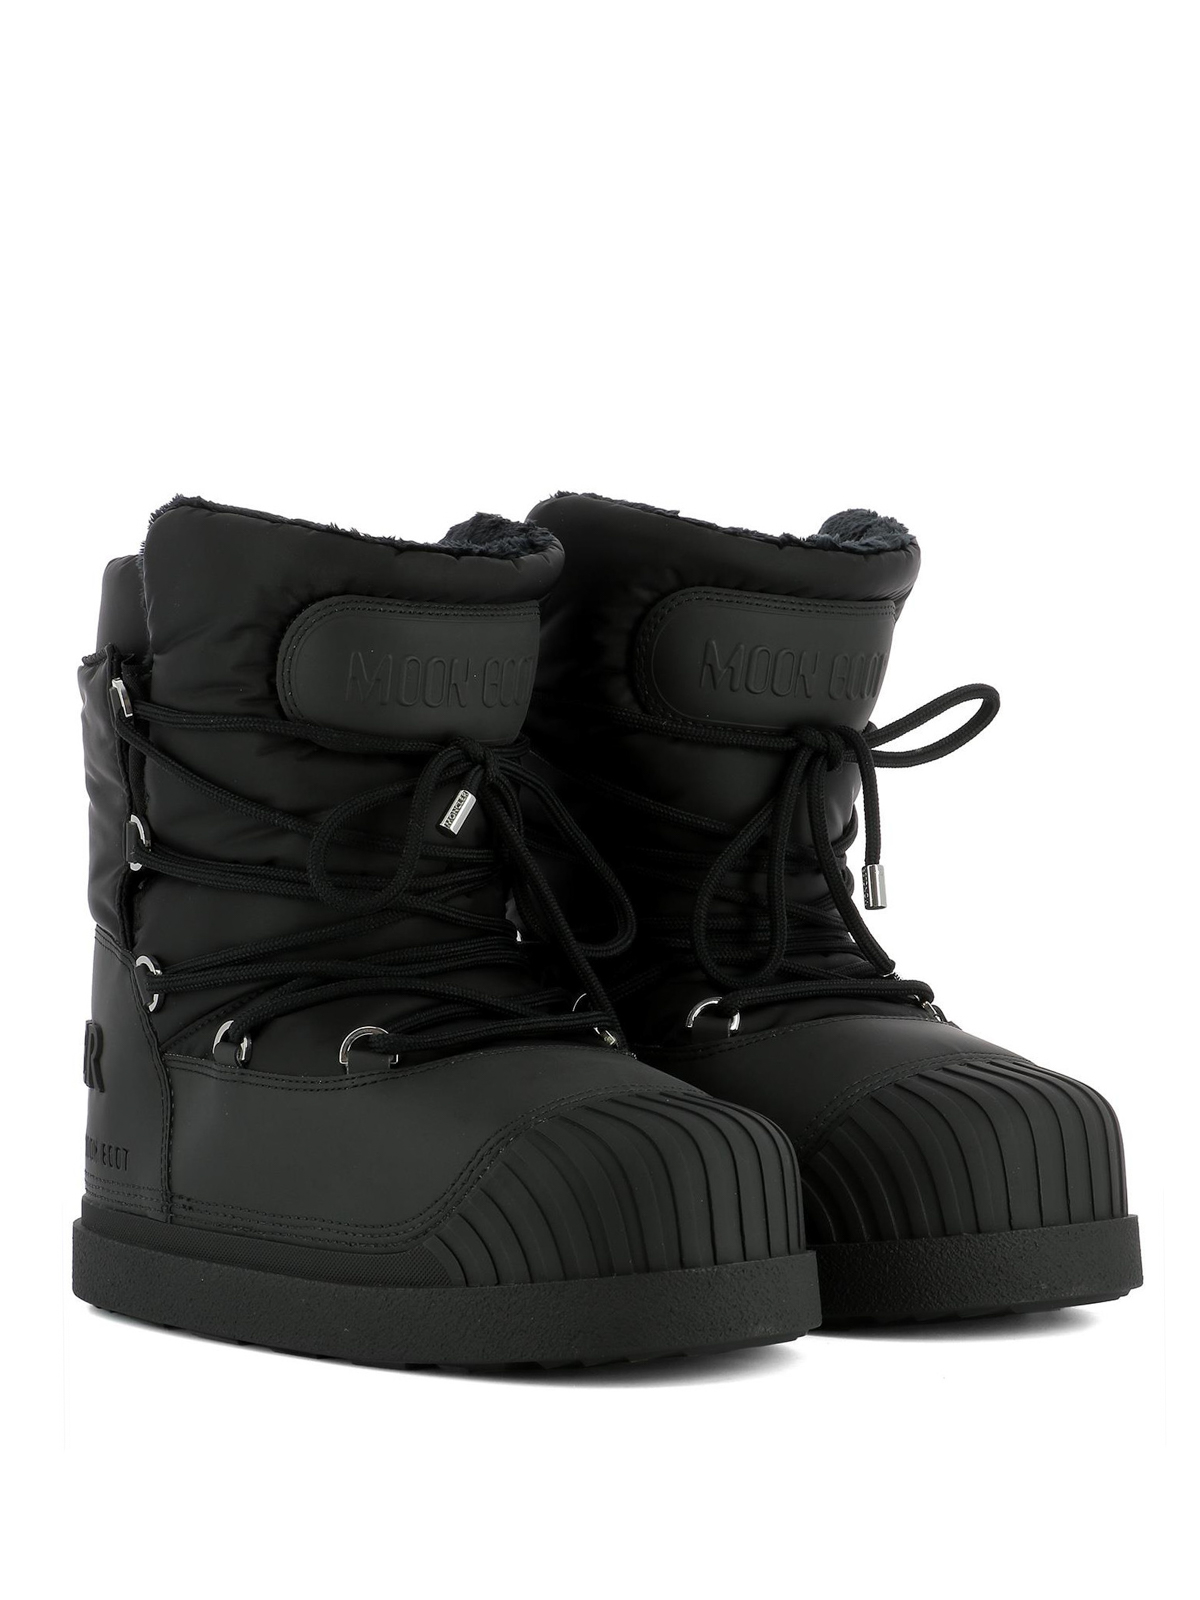 Moncler - Uranus black snow boots 